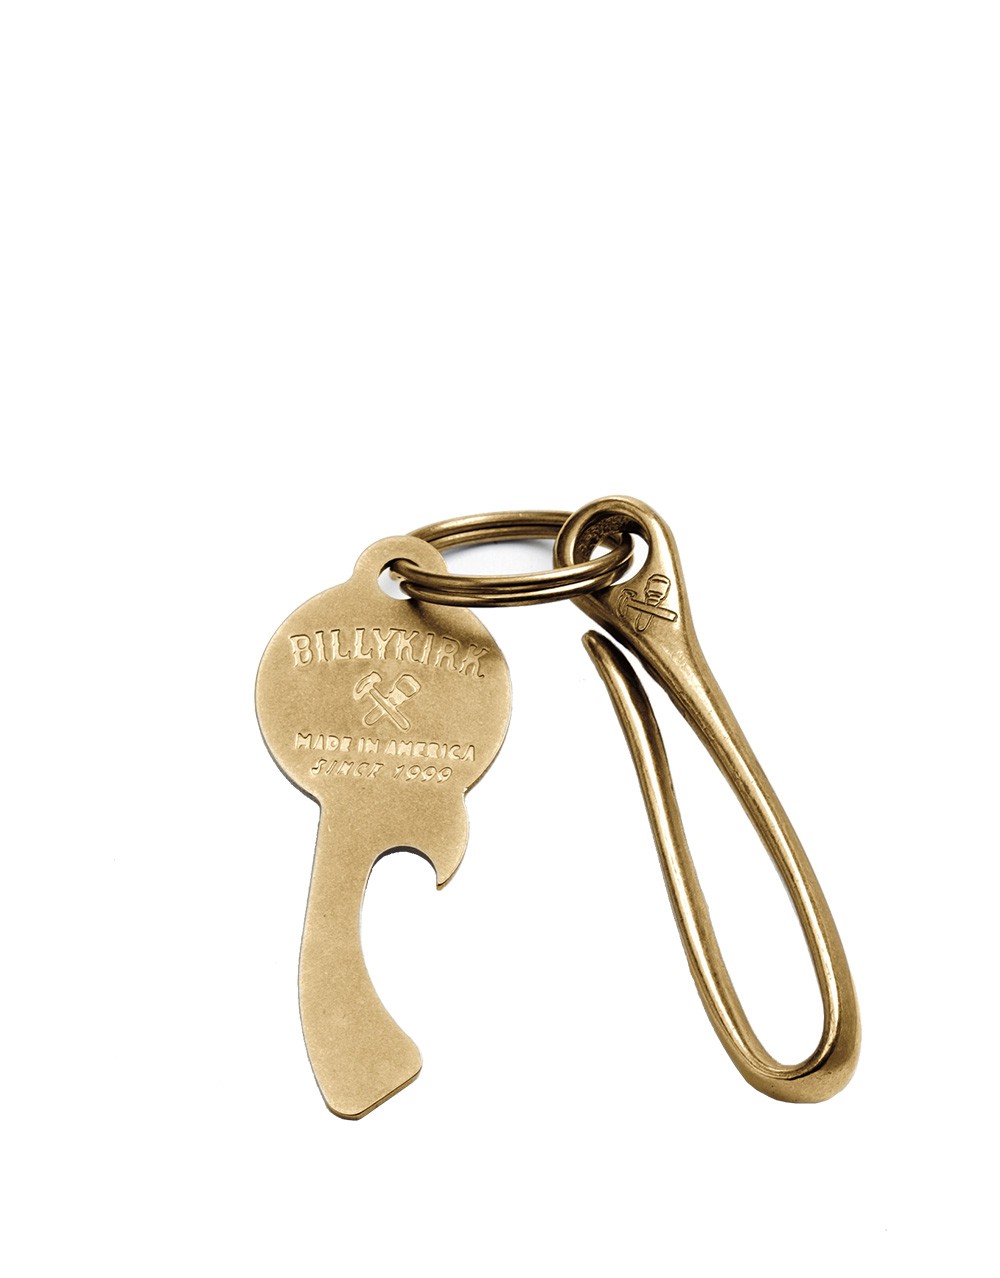 Billykirk No. 506 Key Bundle | Buy Online or Send as a